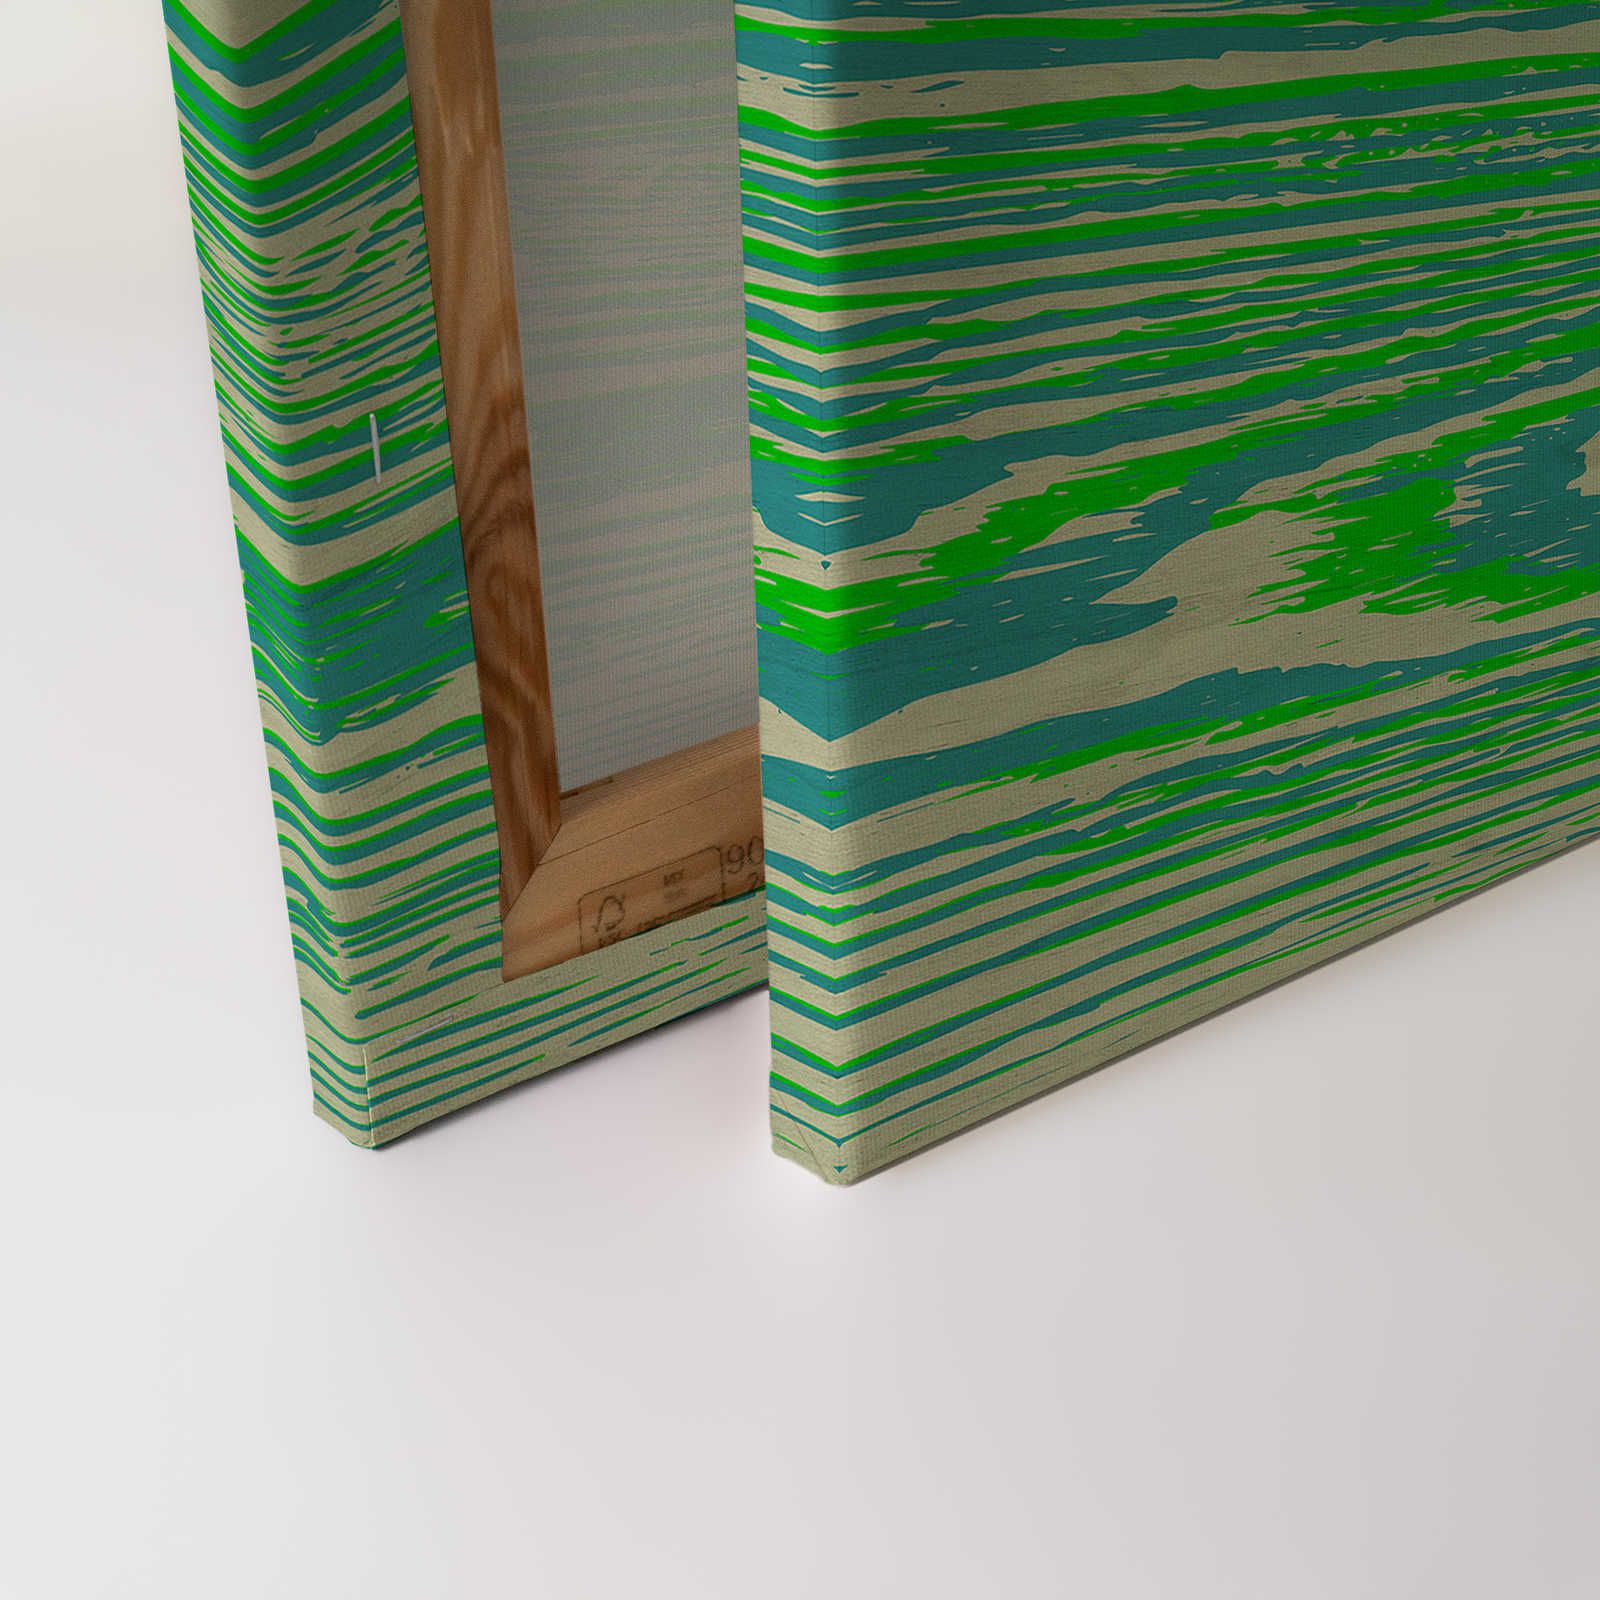             Bounty 1 - Pittura su tela verde neon con effetto legno - 0,90 m x 0,60 m
        